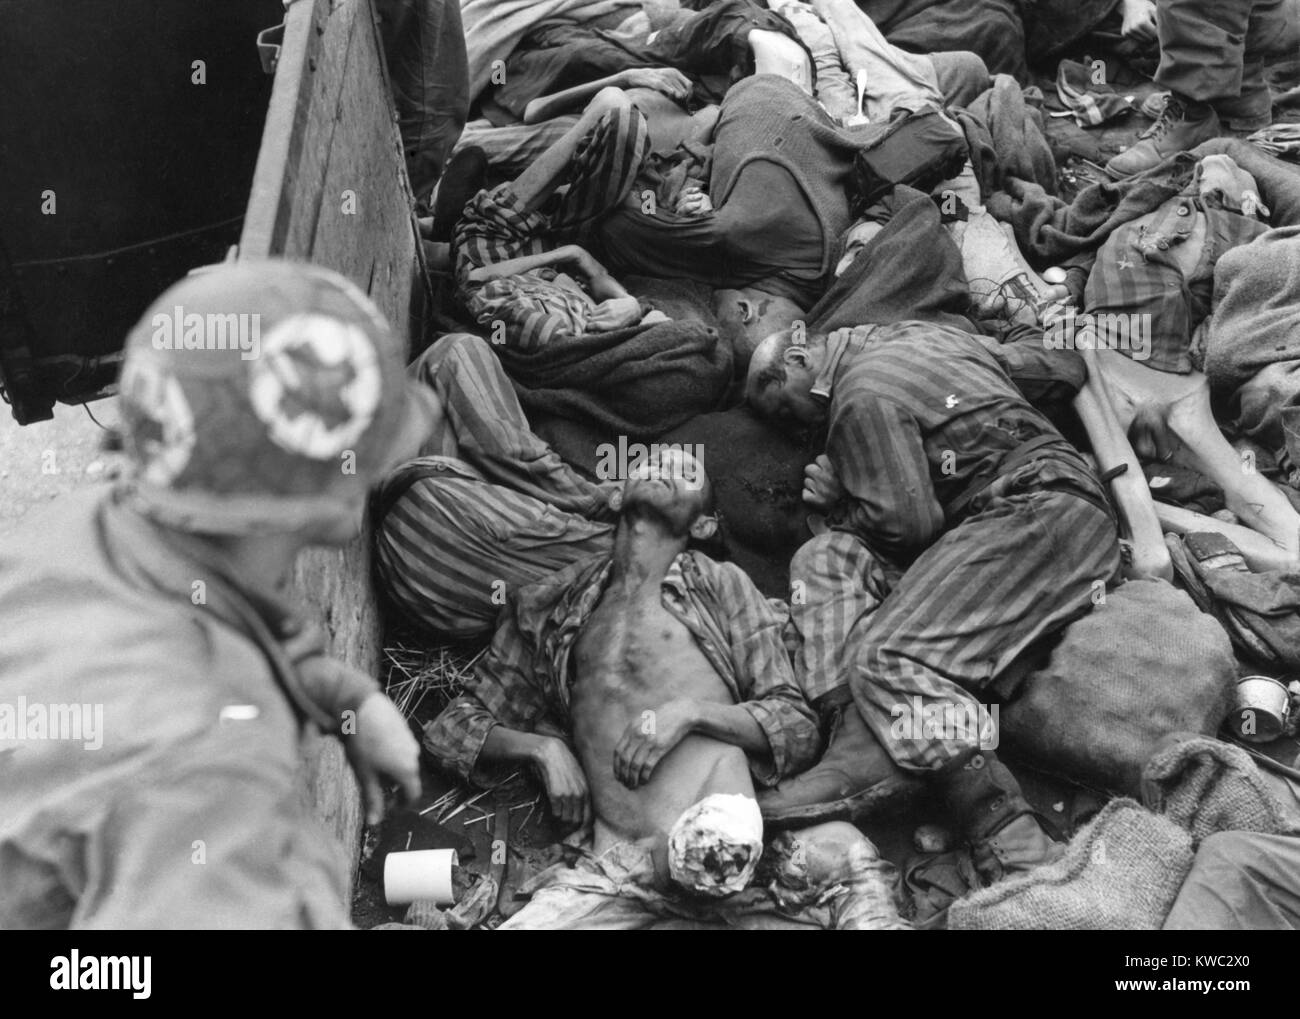 Septième US Army Medical Corpsman ressemble en train voiture remplie de morts ou prisonniers affamés. Comme l'Allemagne nazie s'est effondré en mars 1945, les gardes SS a livré ces organes à Dachau pour la crémation. De nombreux gardes SS nazis déserté le camp que l'armée US s'approcha en avril 1945. World War 2 (BSLOC   2015 13 13) Banque D'Images